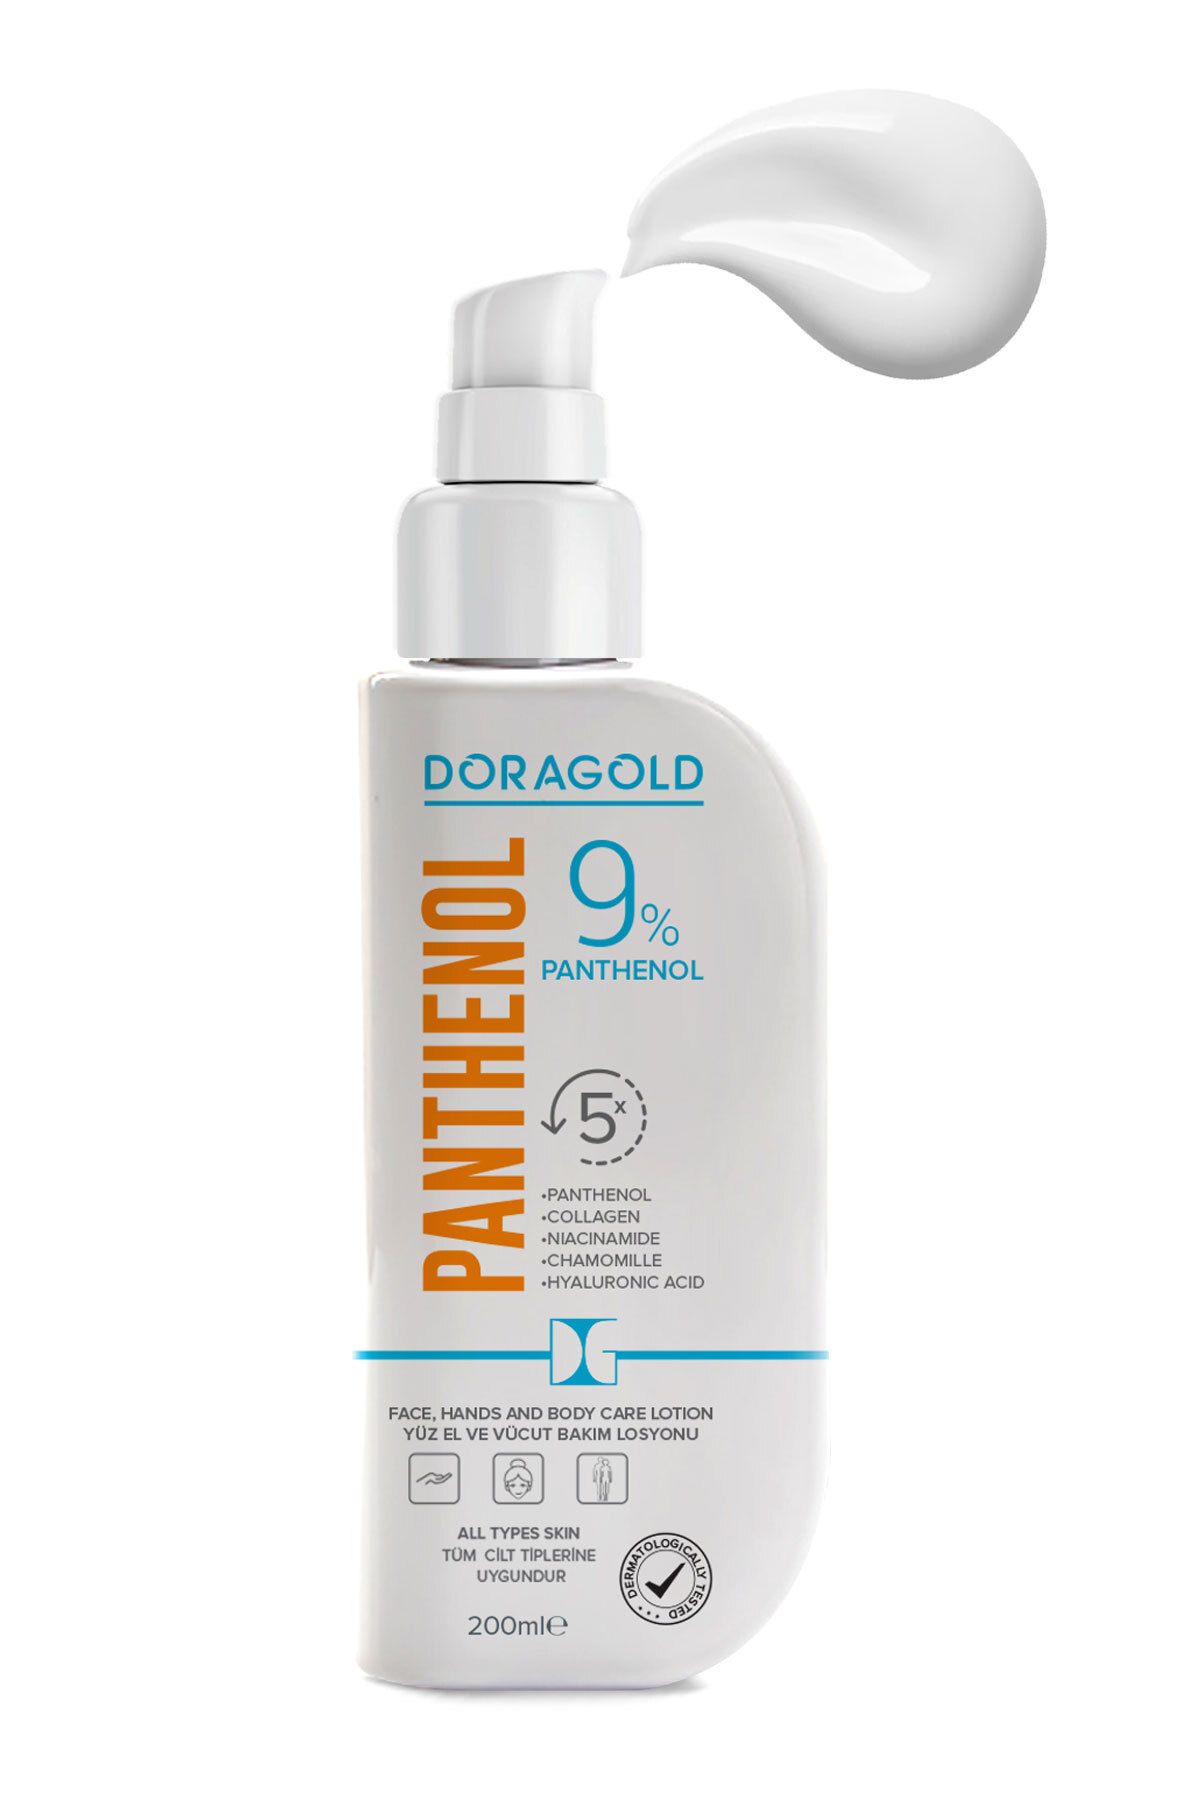 Doragold Panthenol Yüz El Ve Vücut Bakım Losyonu %9 Panthenol Nemlendirici Krem 200 ml